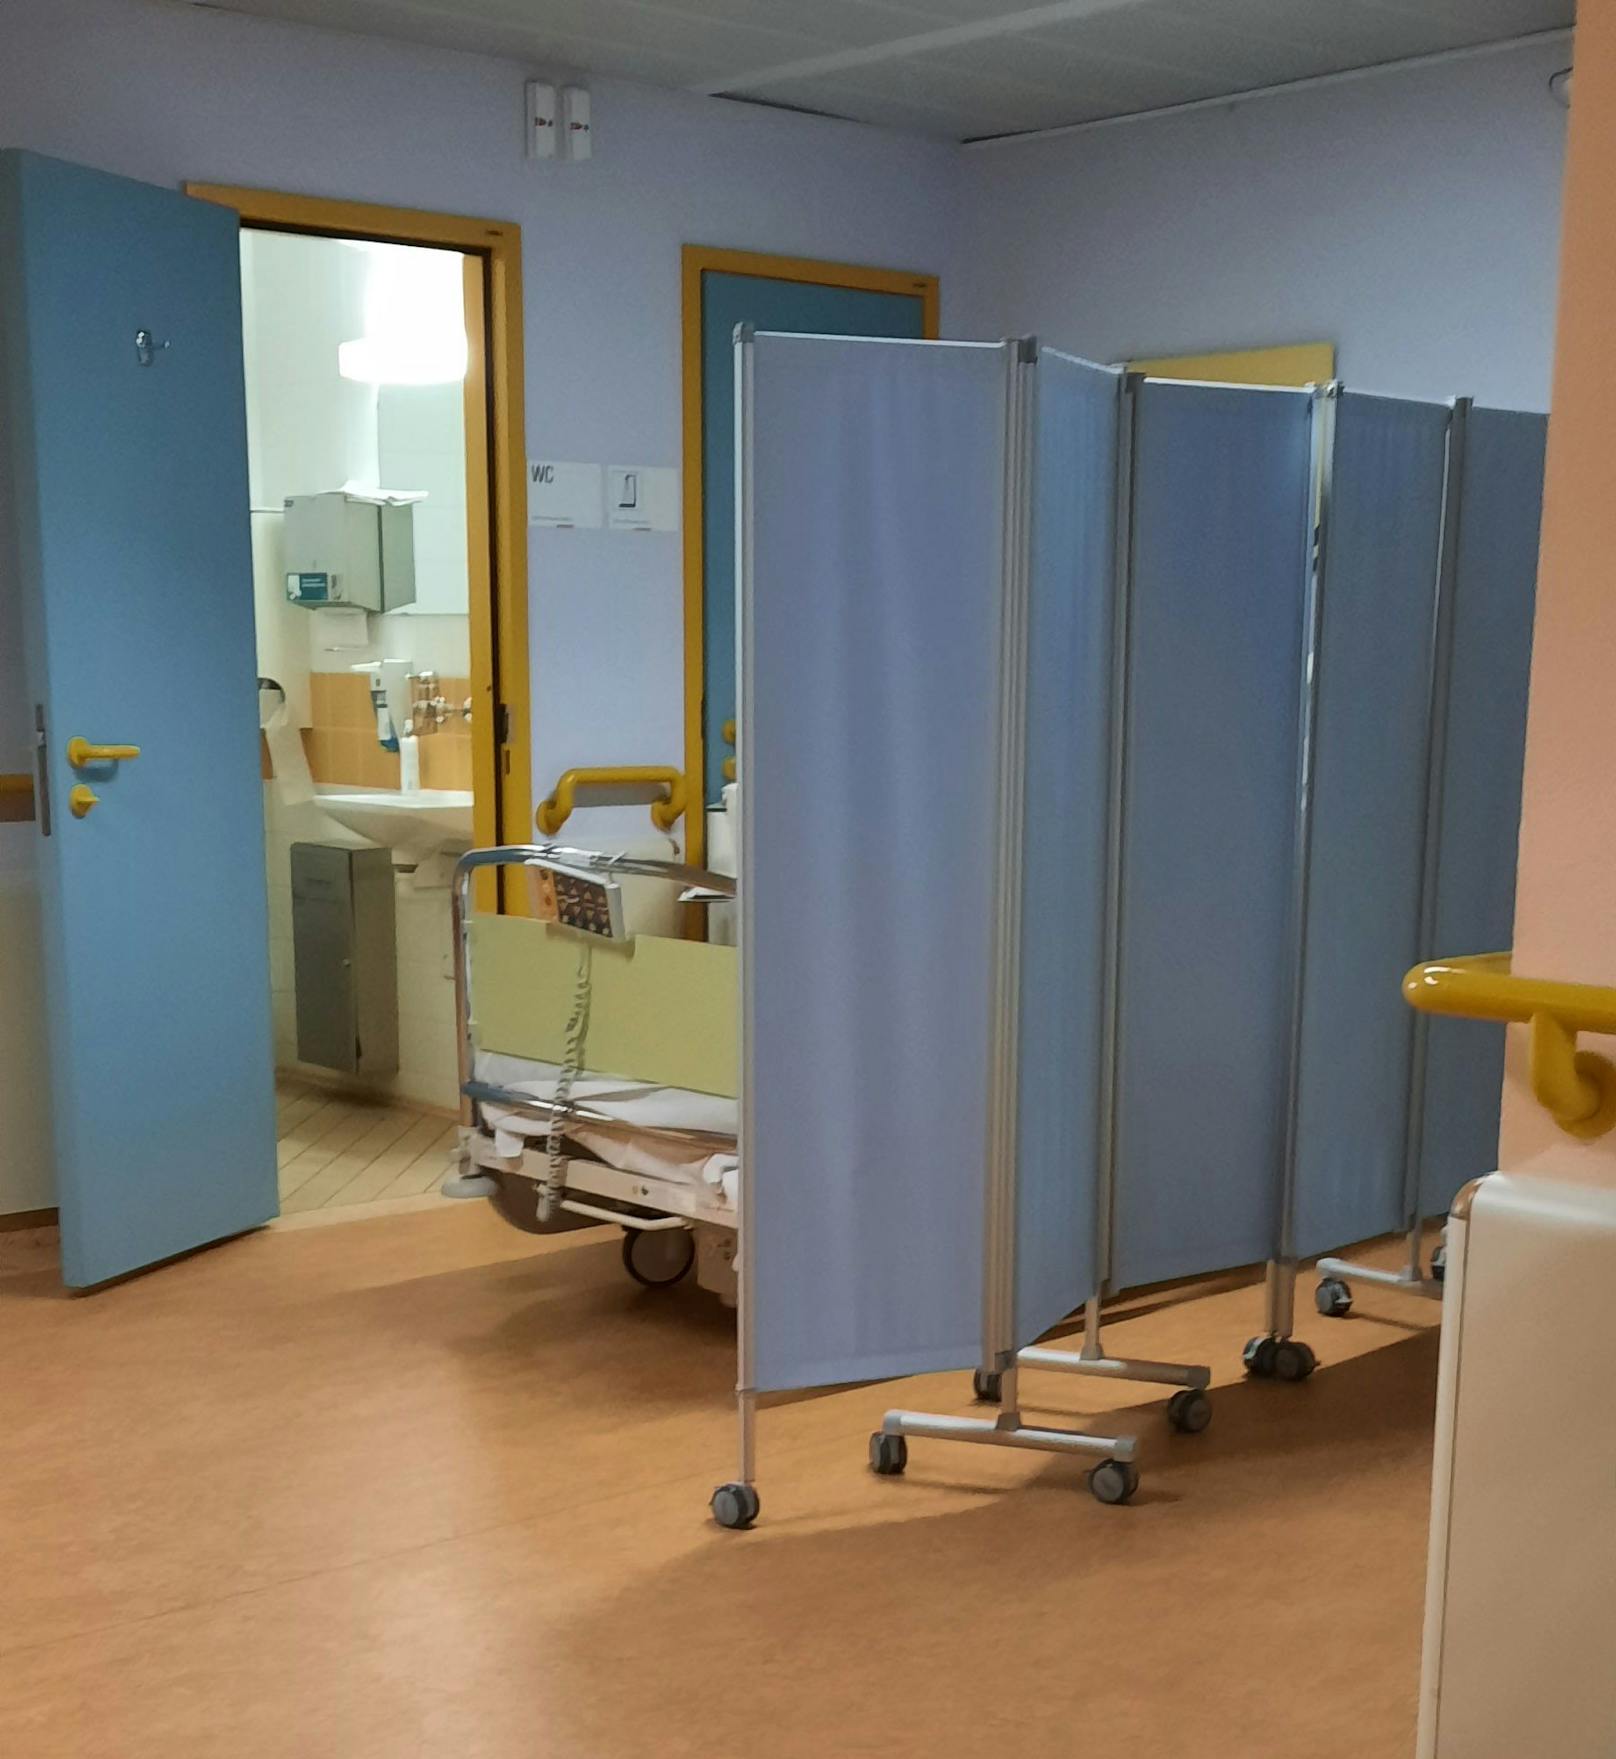 Auf der Unfallchirurgischen Abteilung in der Wiener Klinik Donaustadt liegen mehrere Patienten am Gang.